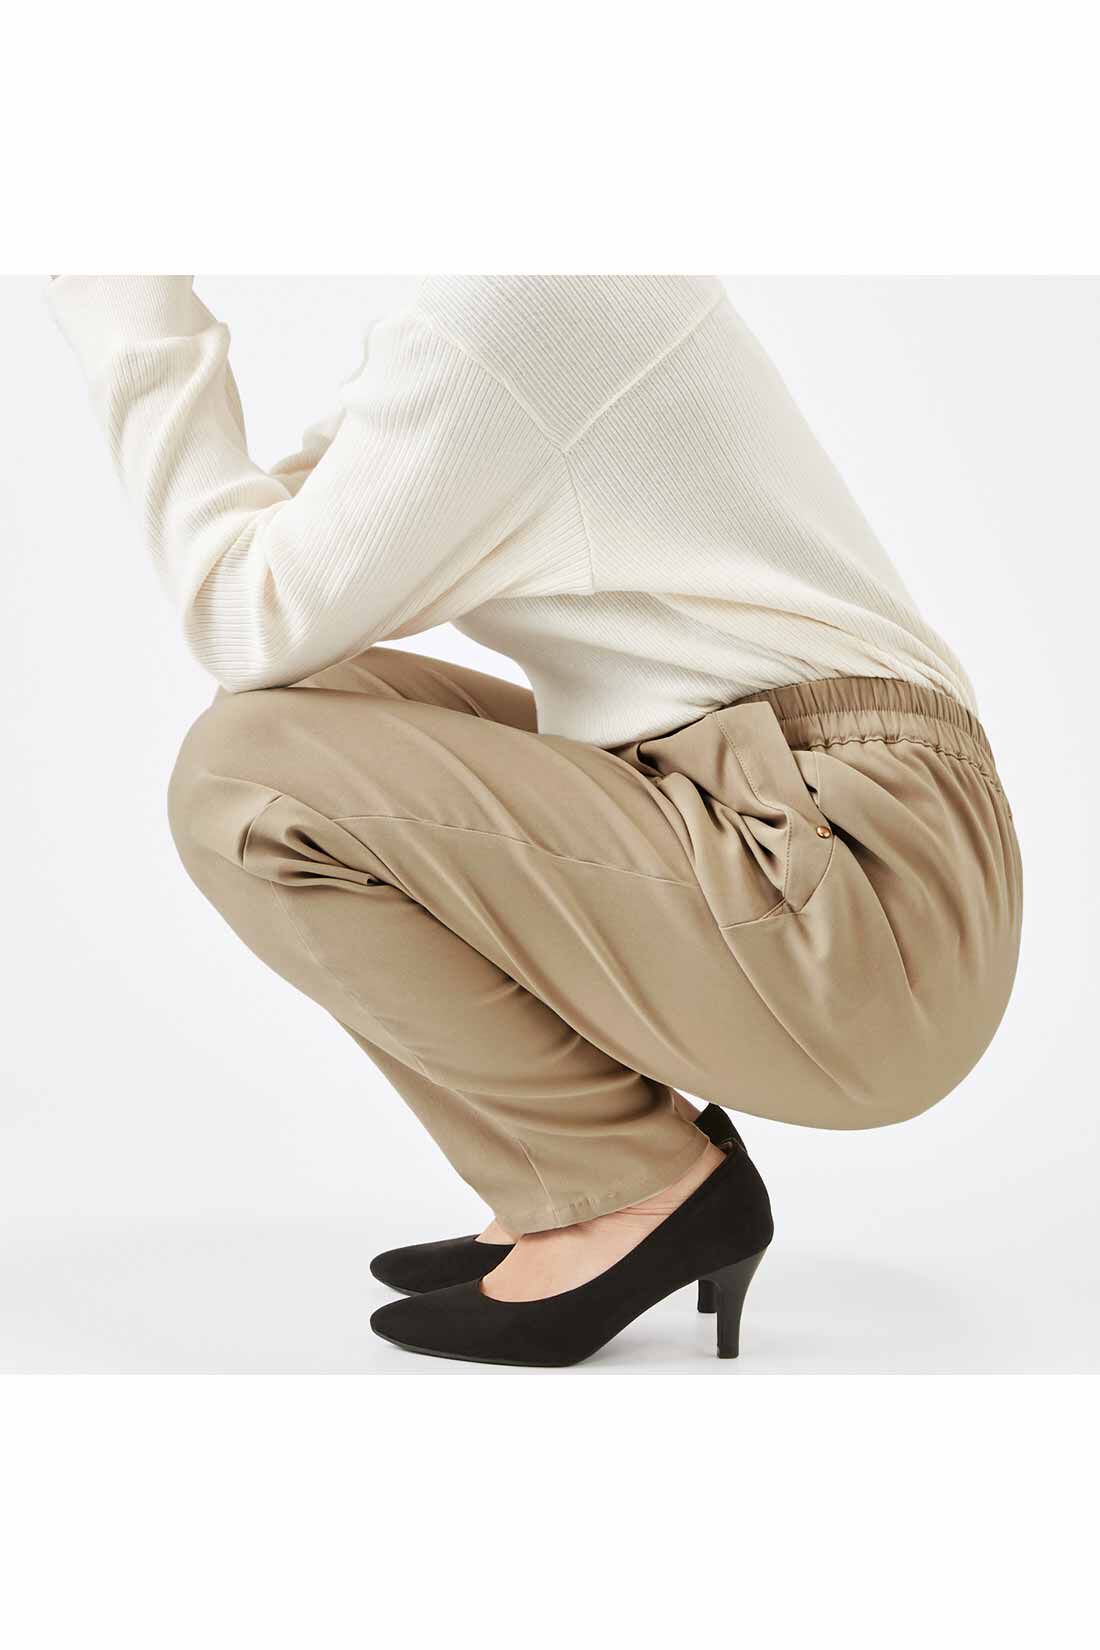 IEDIT|IEDIT[イディット]　ぐいっとしなやか すらりと美脚！ ストレッチ布はく素材のエアノビワイドパンツ〈ネイビー〉|しゃがんでも座りっぱなしでも快適で、ひざやおしりも伸びやからくちん。背中も見えにくくて安心！